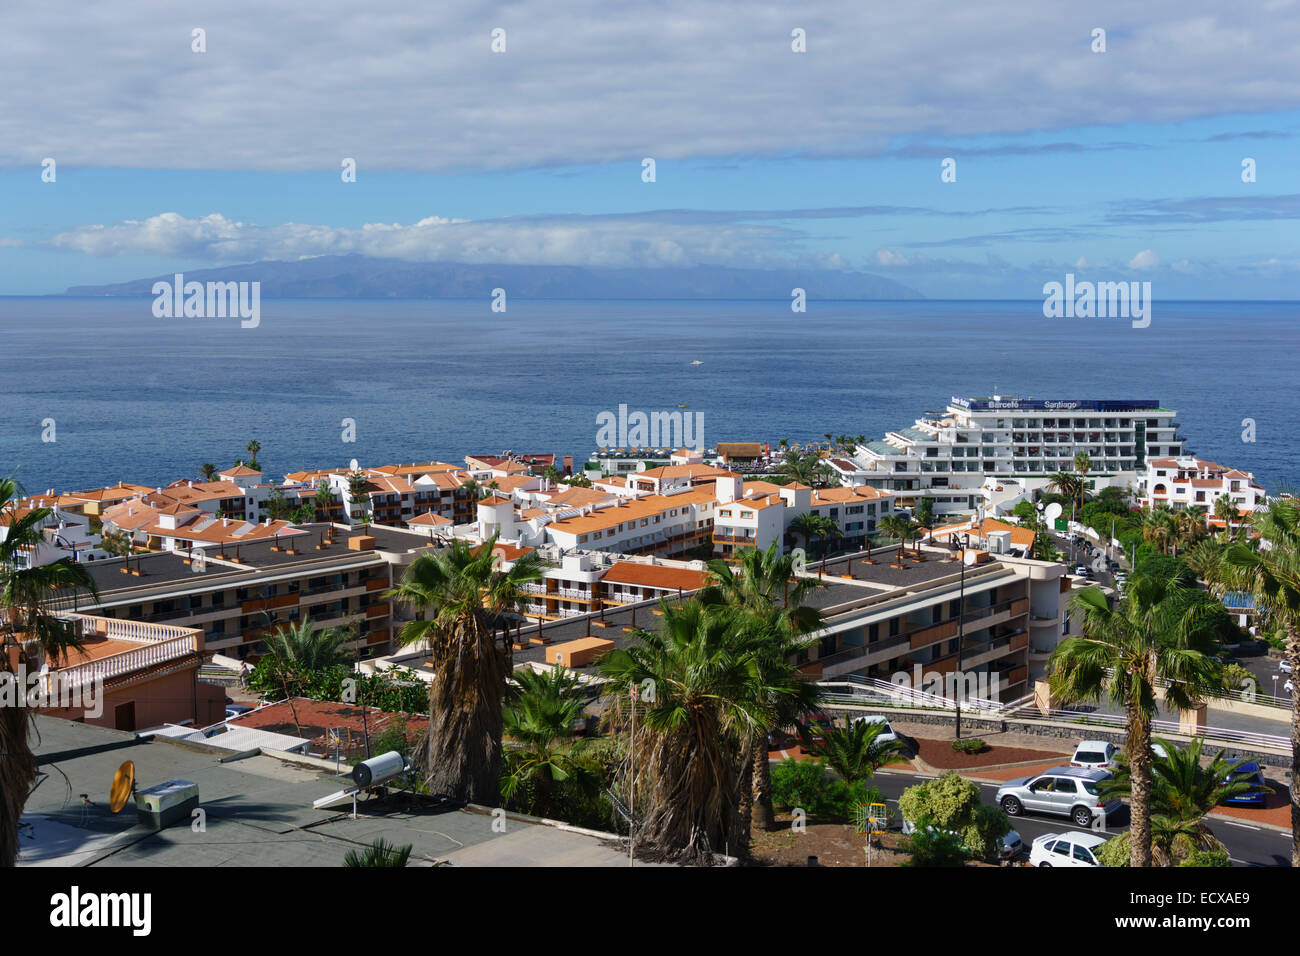 El Barcelo Santiago hotel Tenerife, Puerto de Santiago y el Balcon pisos  desarrollo Fotografía de stock - Alamy